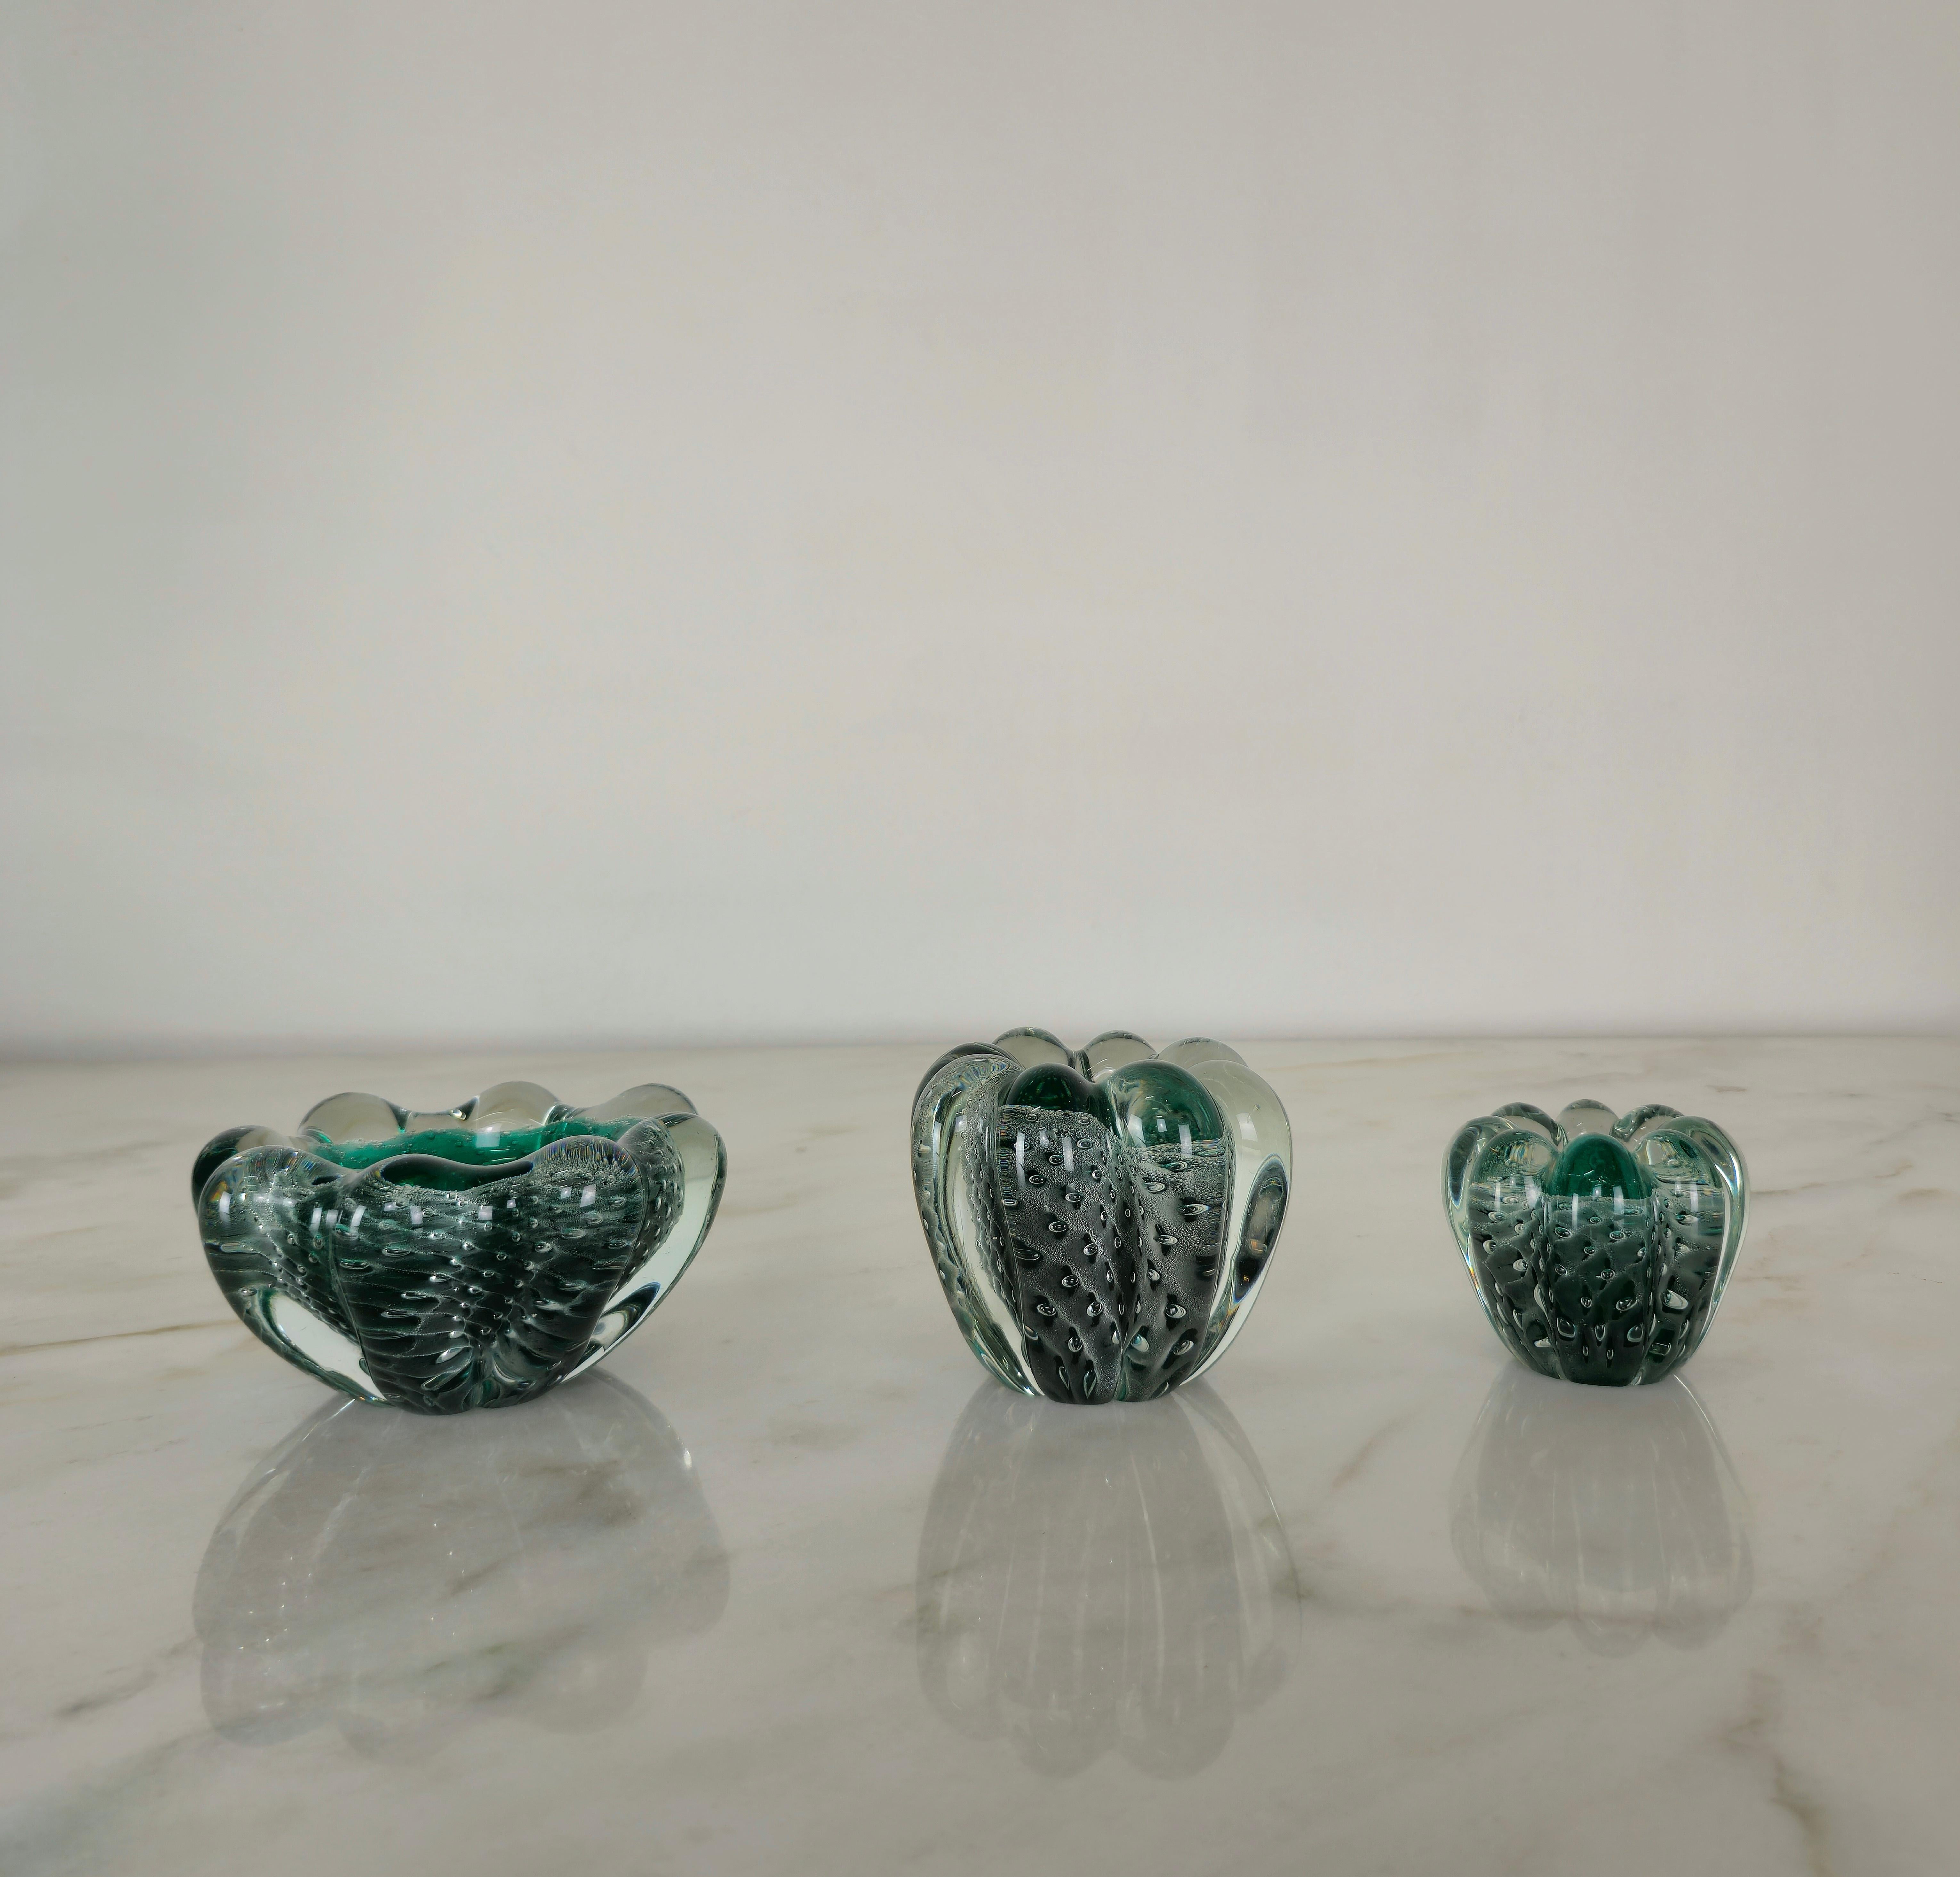 Ensemble de 3 vide-poche/cendriers/objets décoratifs de différentes tailles produits en Italie dans les années 1950 par Seguso Vetri d'Arte.
Les 3 objets ont été réalisés en verre de Murano sommerso bullicante dans des tons transparents et vert